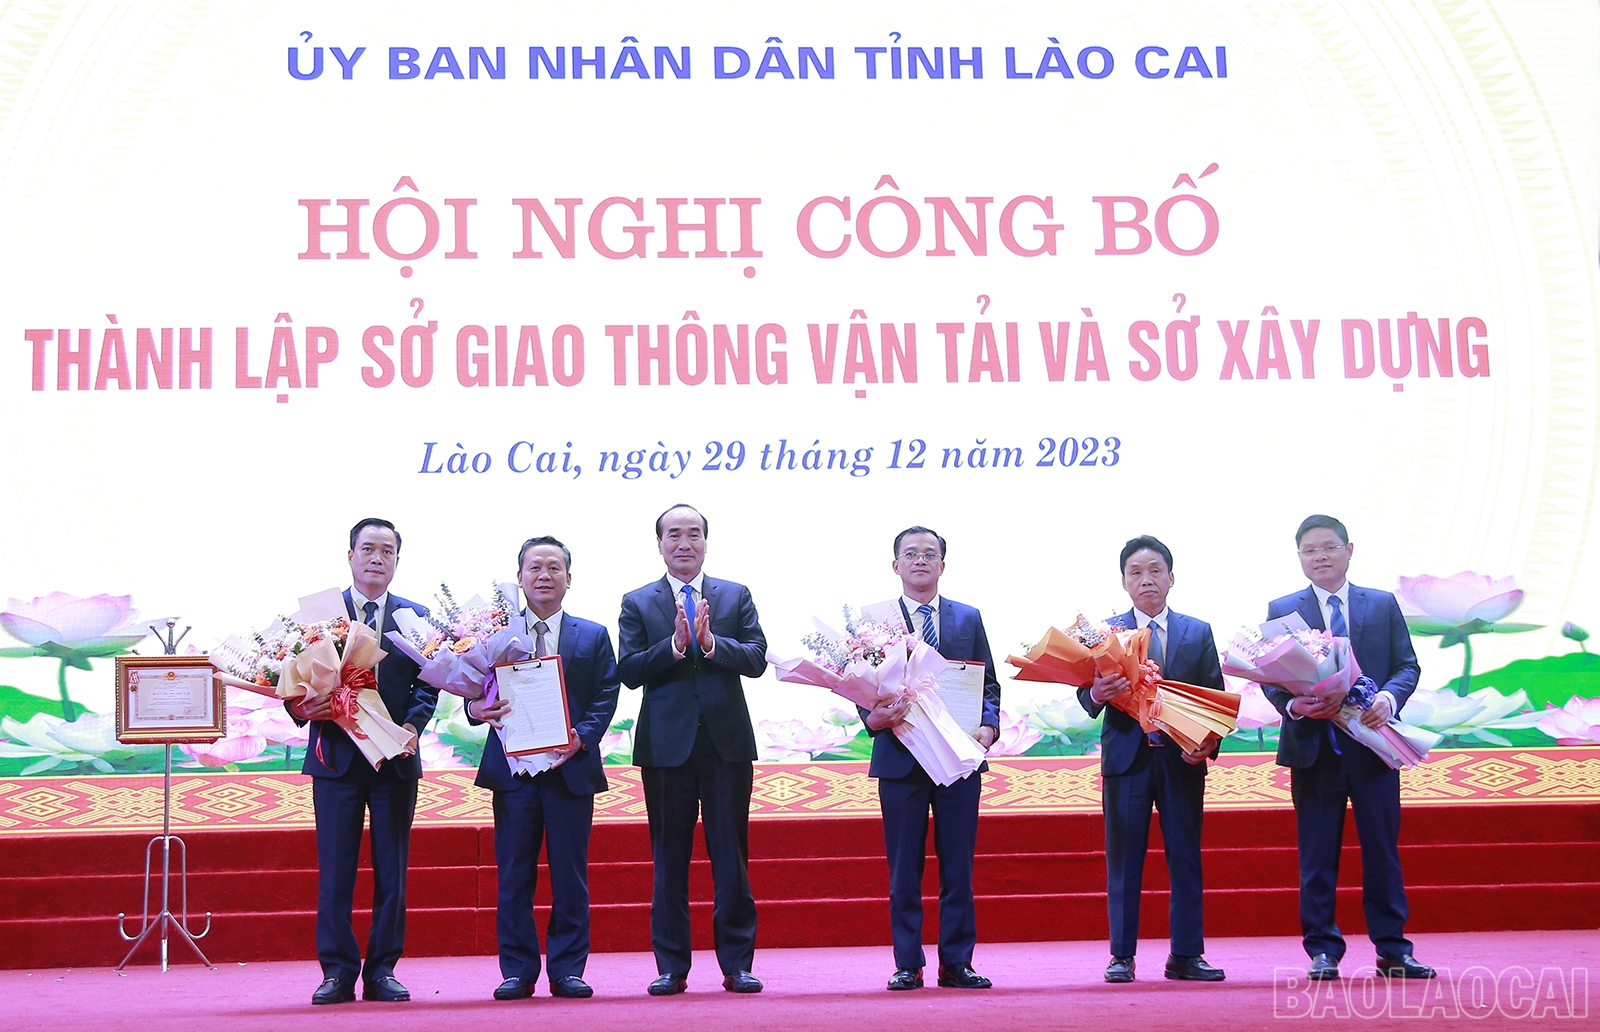 Lào Cai thành lập Sở Giao thông vận tải và Sở Xây dựng, bổ nhiệm lãnh đạo 2 Sở- Ảnh 1.